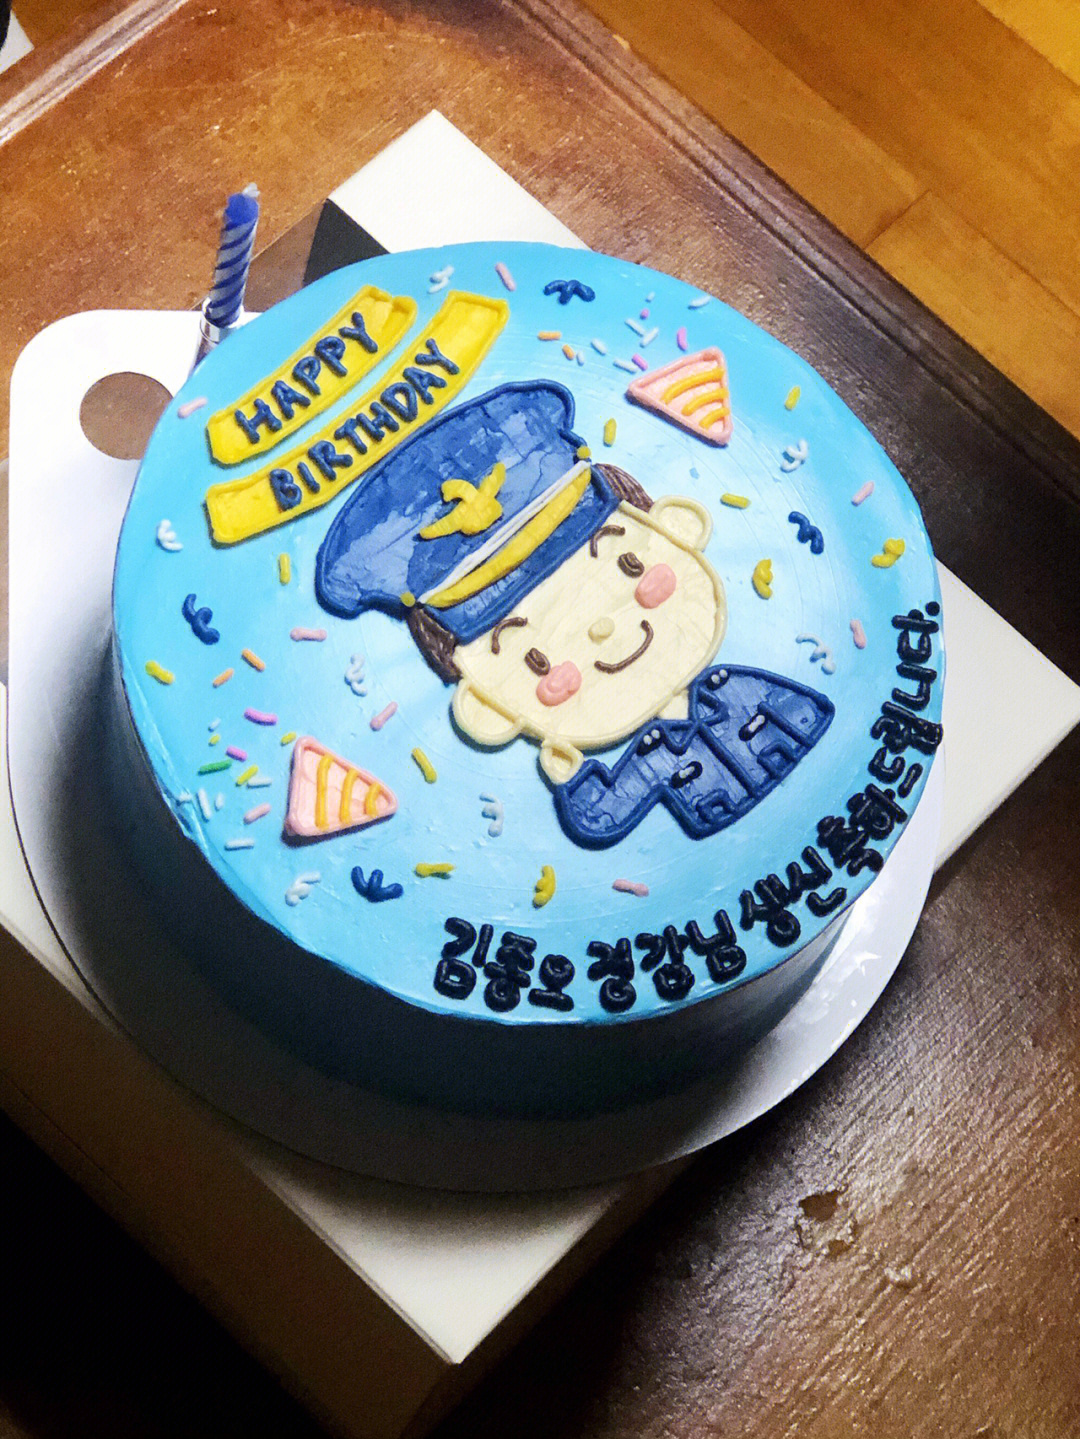 警察老公生日蛋糕图片图片